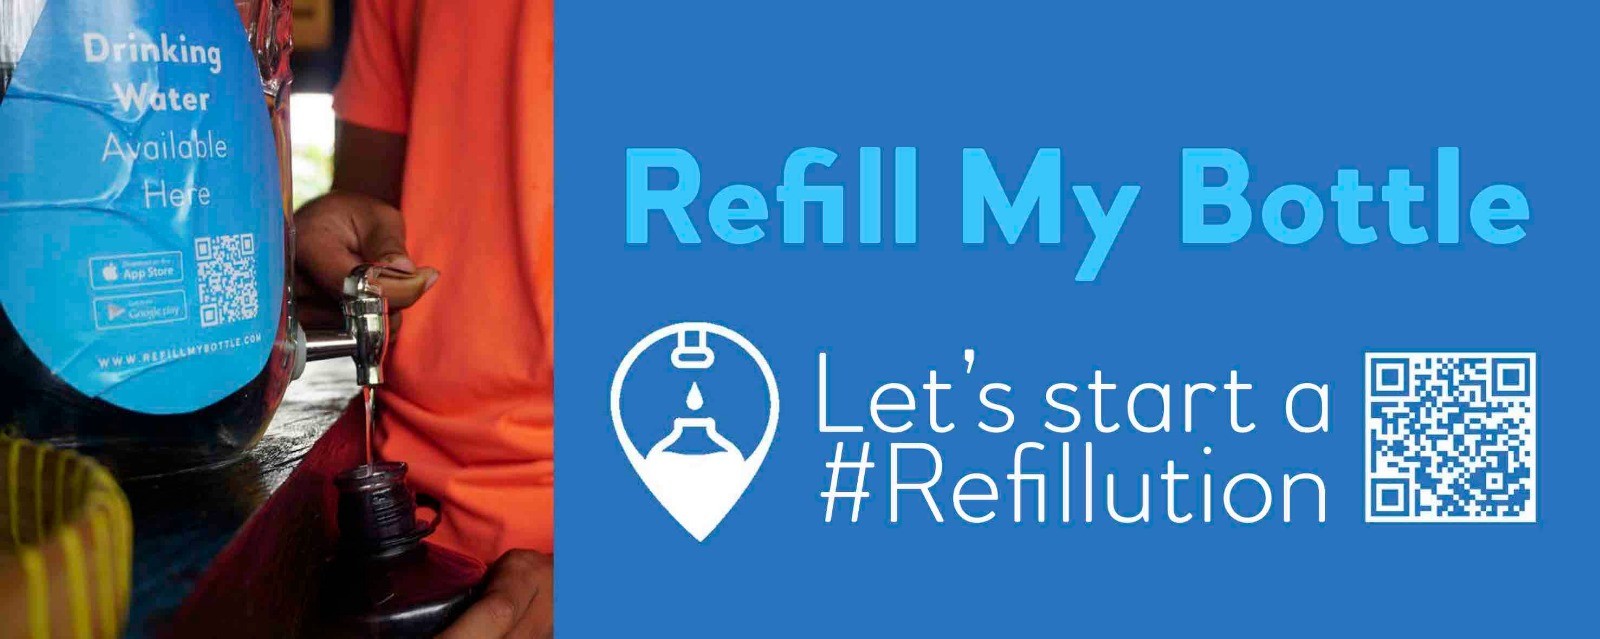 refill-my-bottle